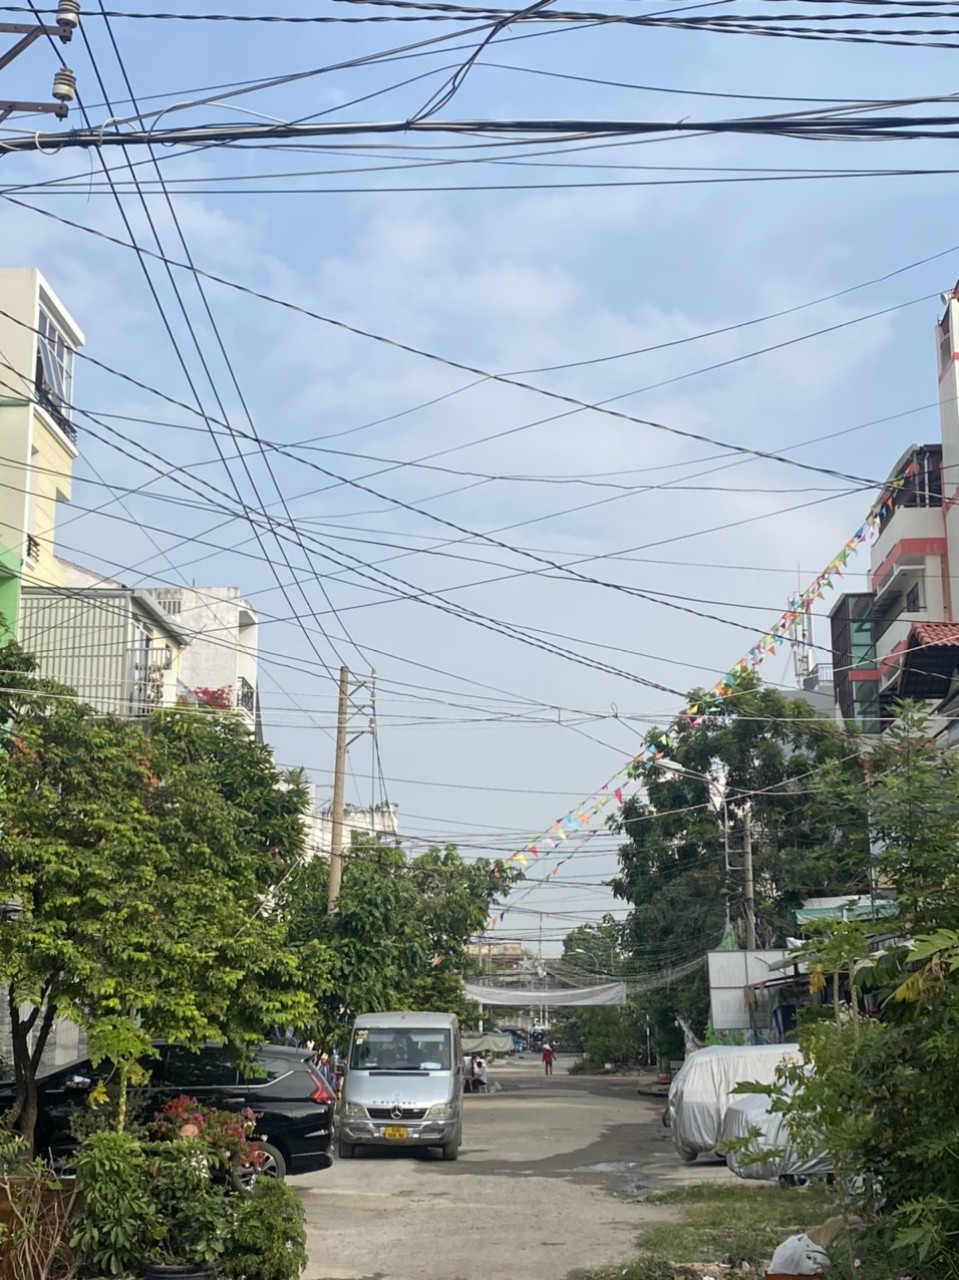 Bán nhà góc 2 mặt đường số 15 kinh doanh F4 Q8 gần chợ Phạm Thế Hiển